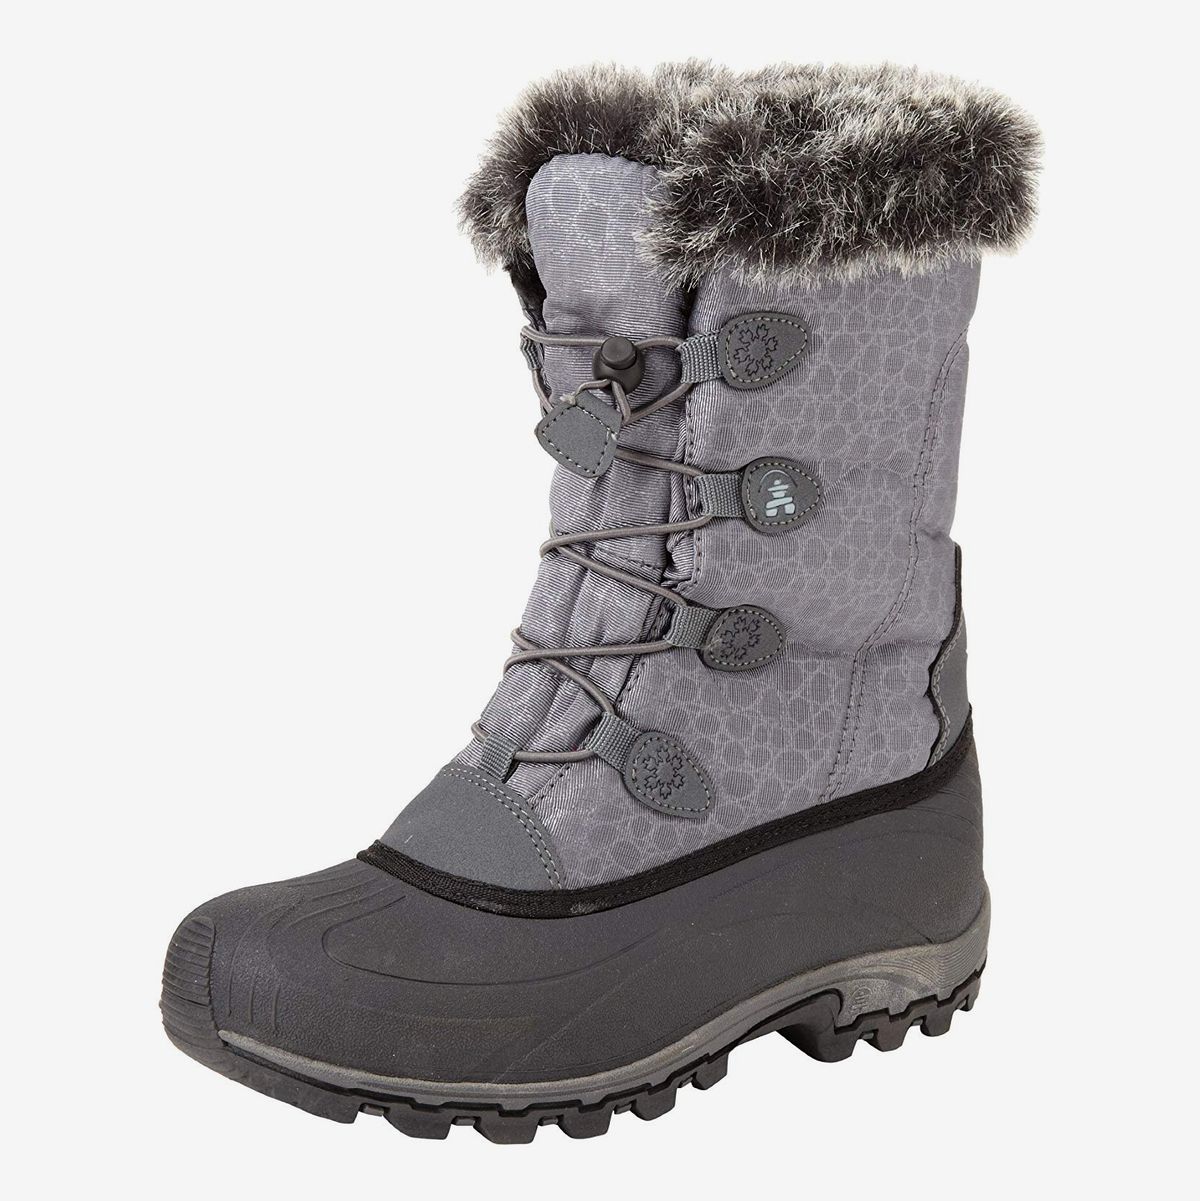 good cheap winter boots